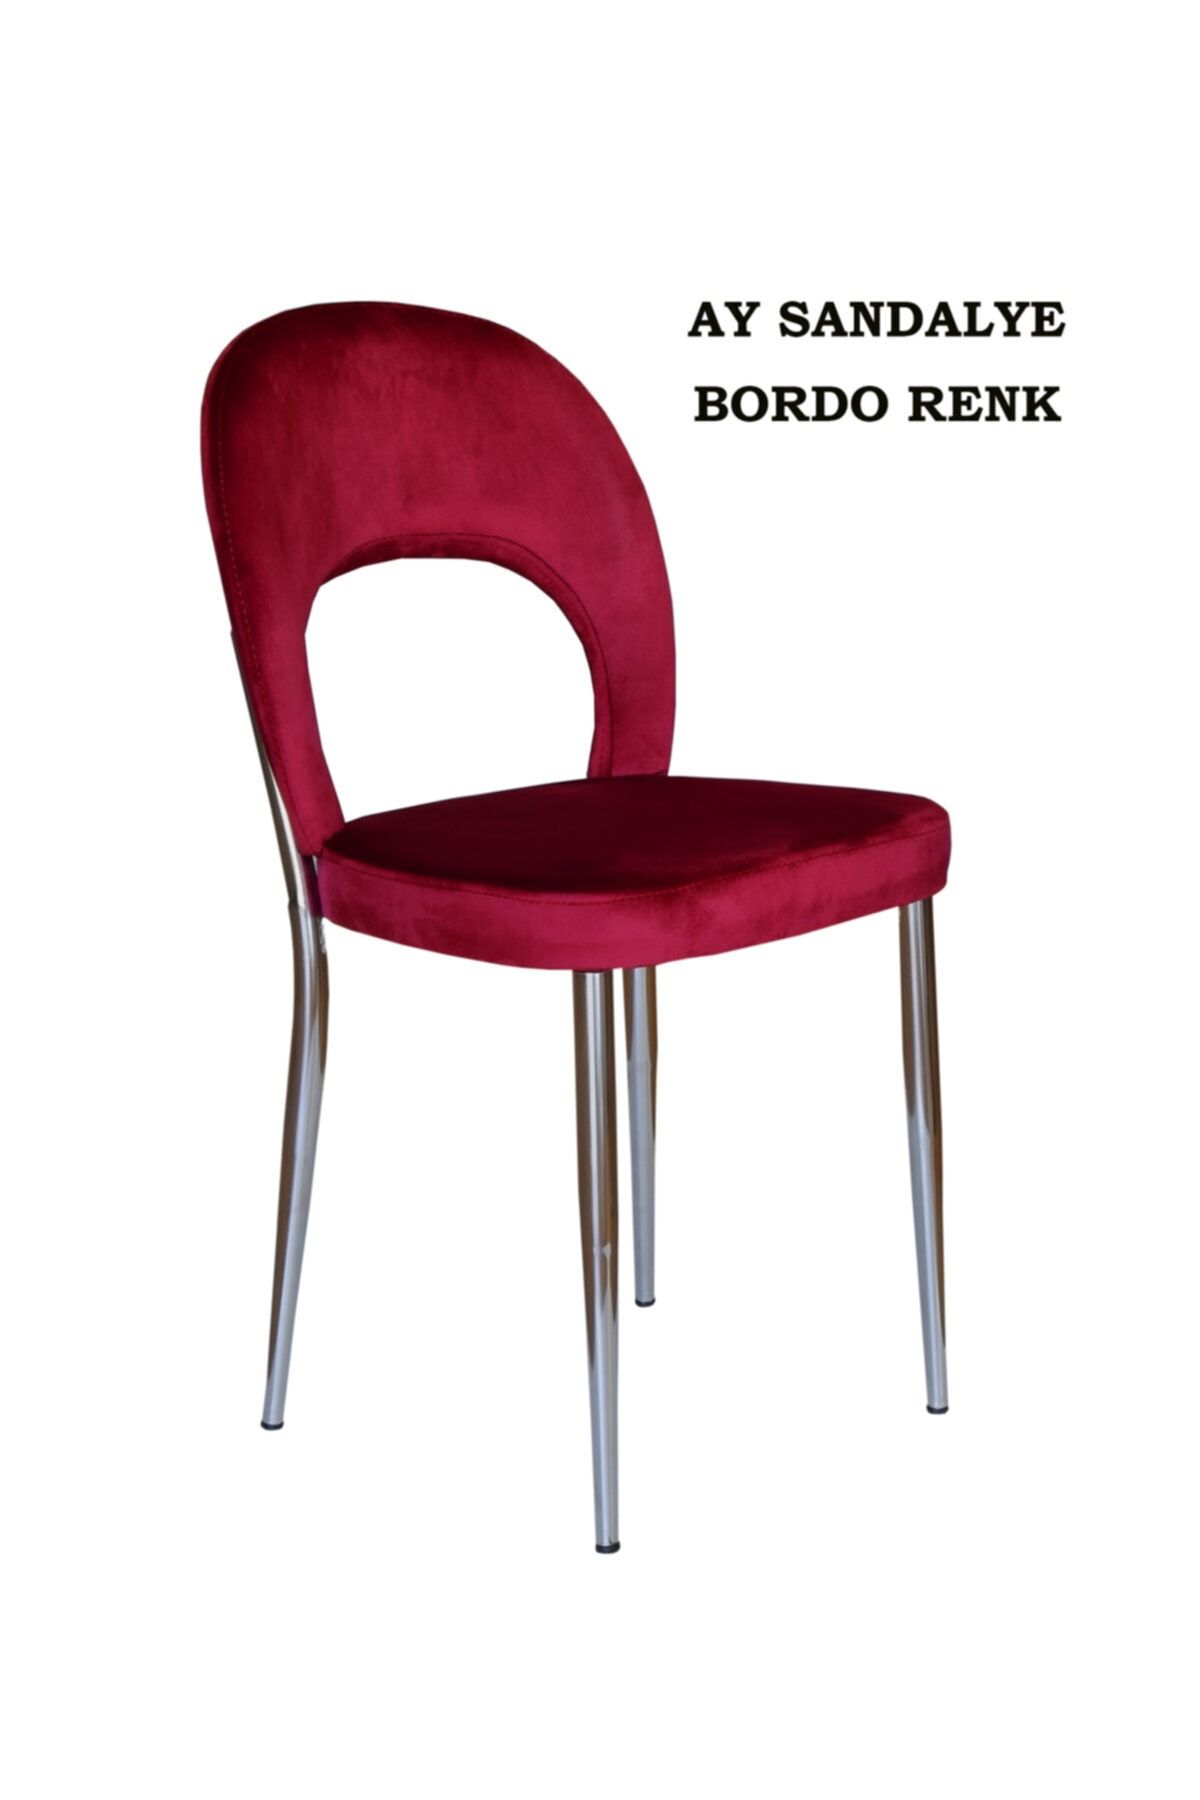 Ankhira Ay Sandalye, Mutfak Sandalyesi, Silinebilir Bordo Renk Kumaş, Krom Ayaklı